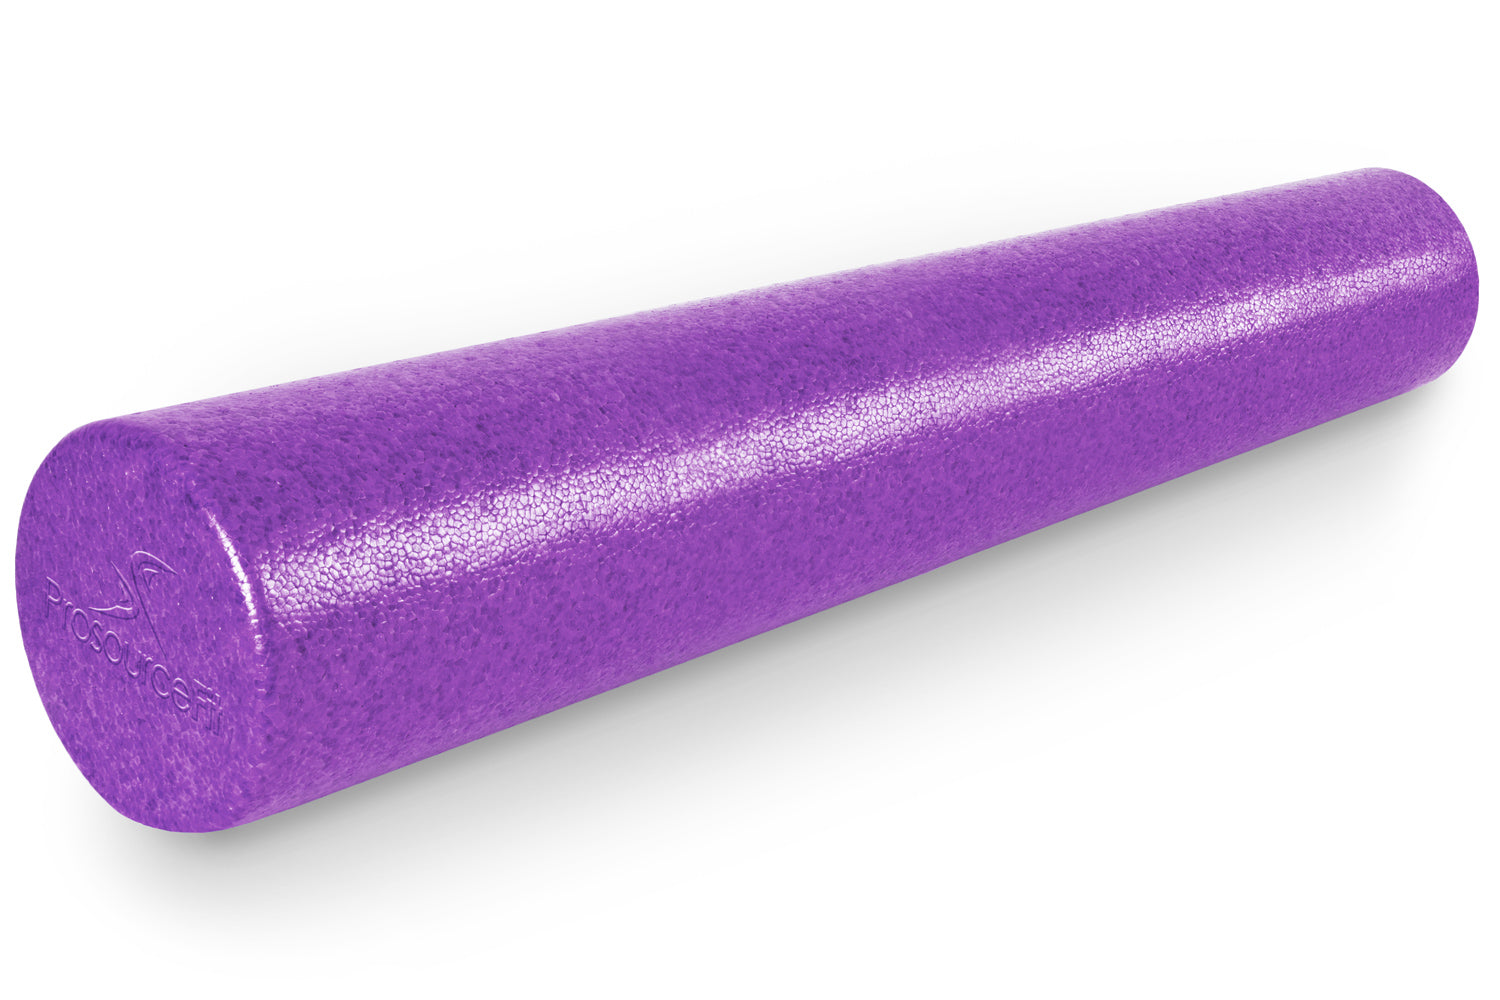 36 x 6 Purple High Density Foam Roller